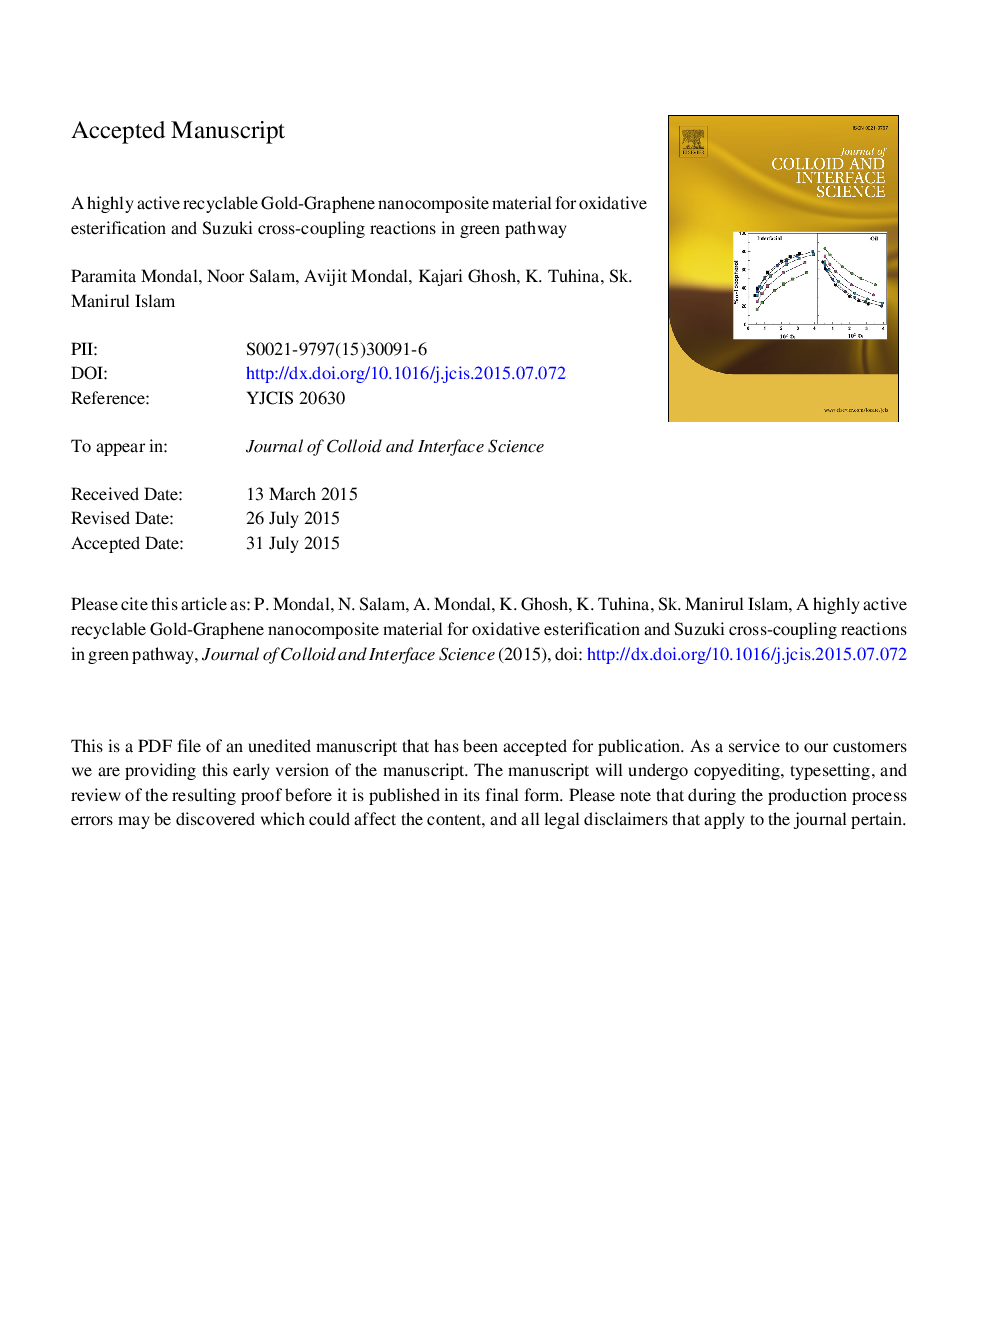 یک ماده نانوکامپوزیت طلای گرافن قابل بازیافت قابل استفاده برای استرینگ اکسیداتیو و واکنش متقابل سوسوکی در مسیر سبز 